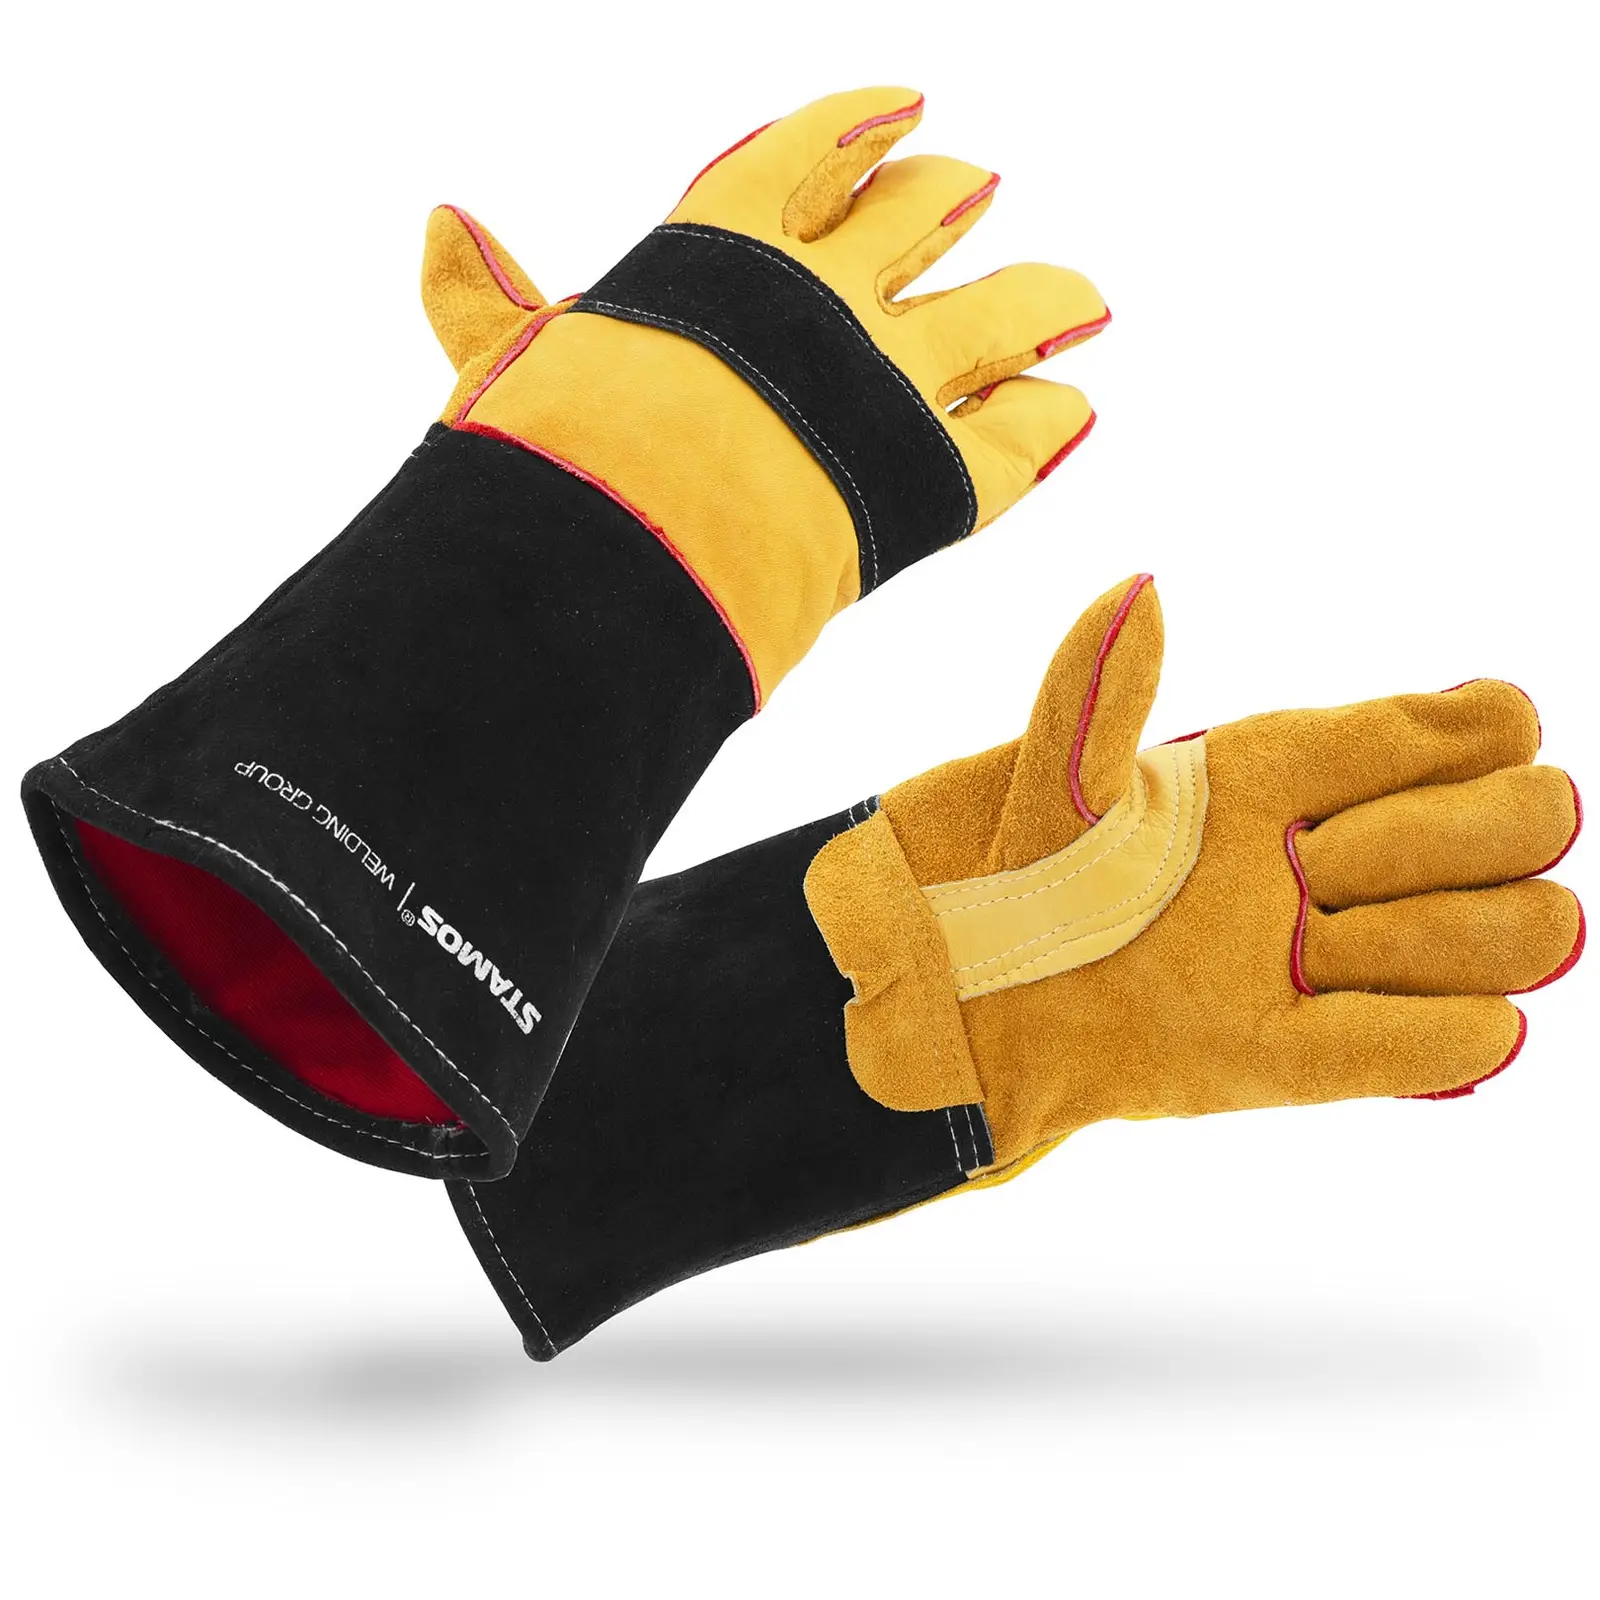 Welding Gloves Welding Gloves Heat Protection Glove Size. Xxl